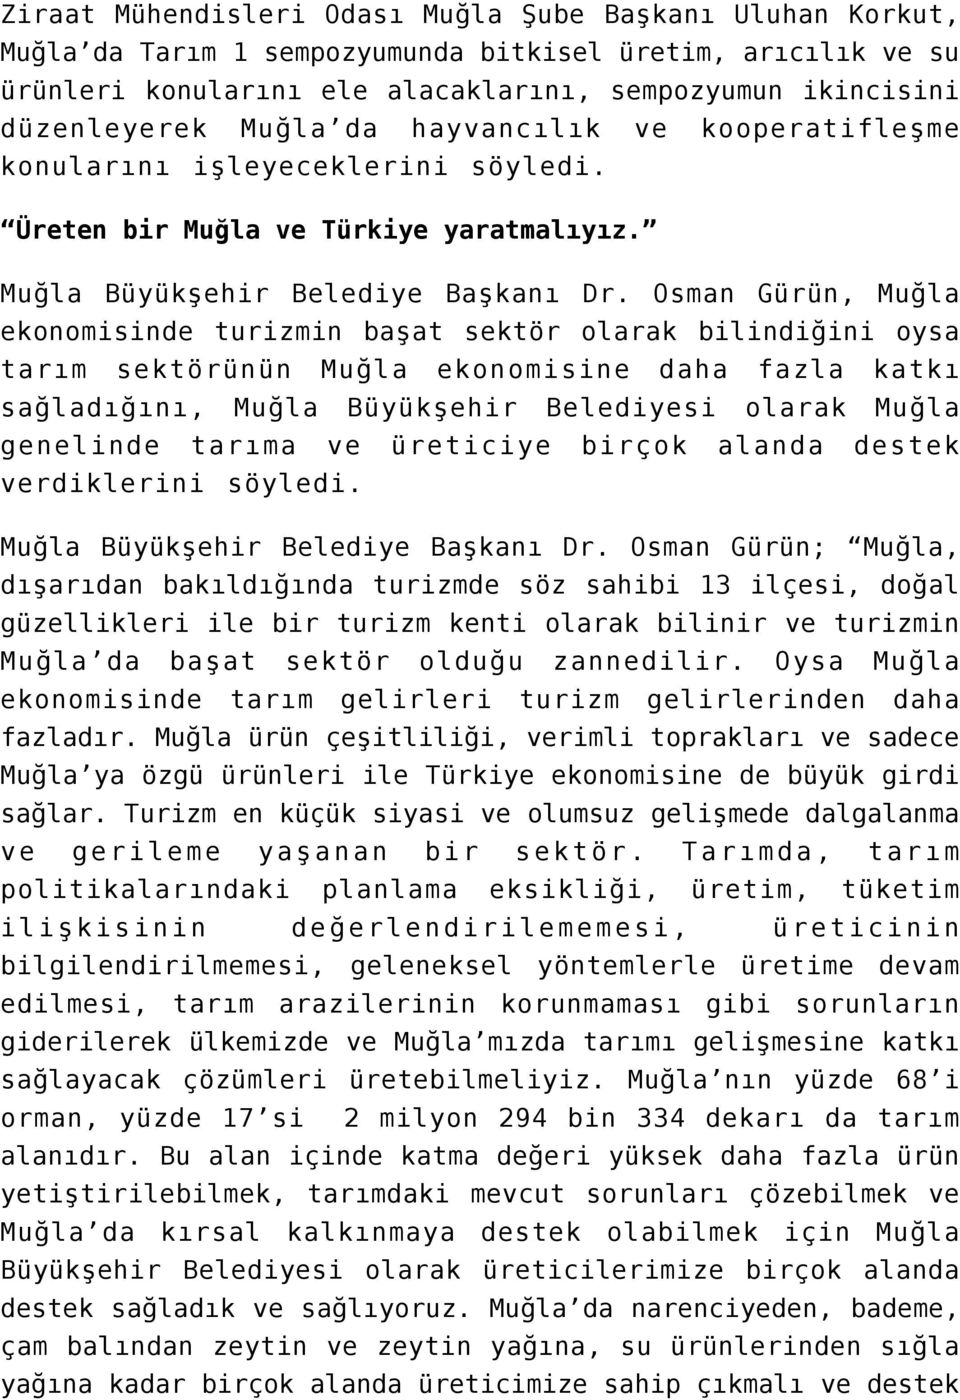 Osman Gürün, Muğla ekonomisinde turizmin başat sektör olarak bilindiğini oysa tarım sektörünün Muğla ekonomisine daha fazla katkı sağladığını, Muğla Büyükşehir Belediyesi olarak Muğla genelinde